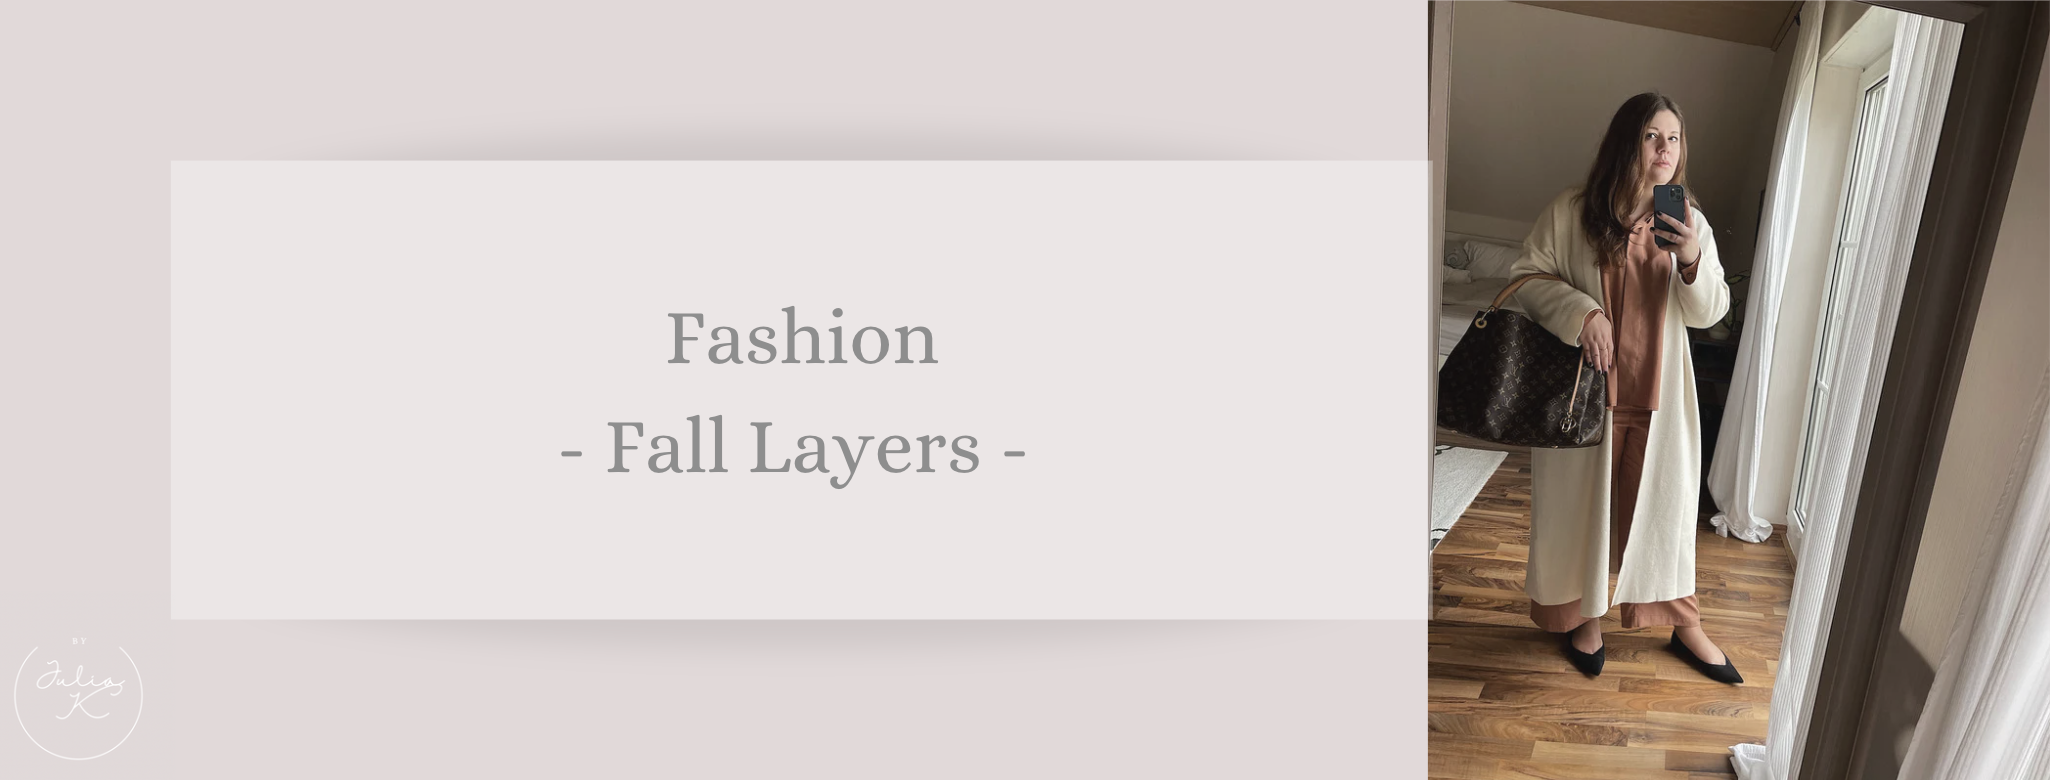 Fashion: Fall layers